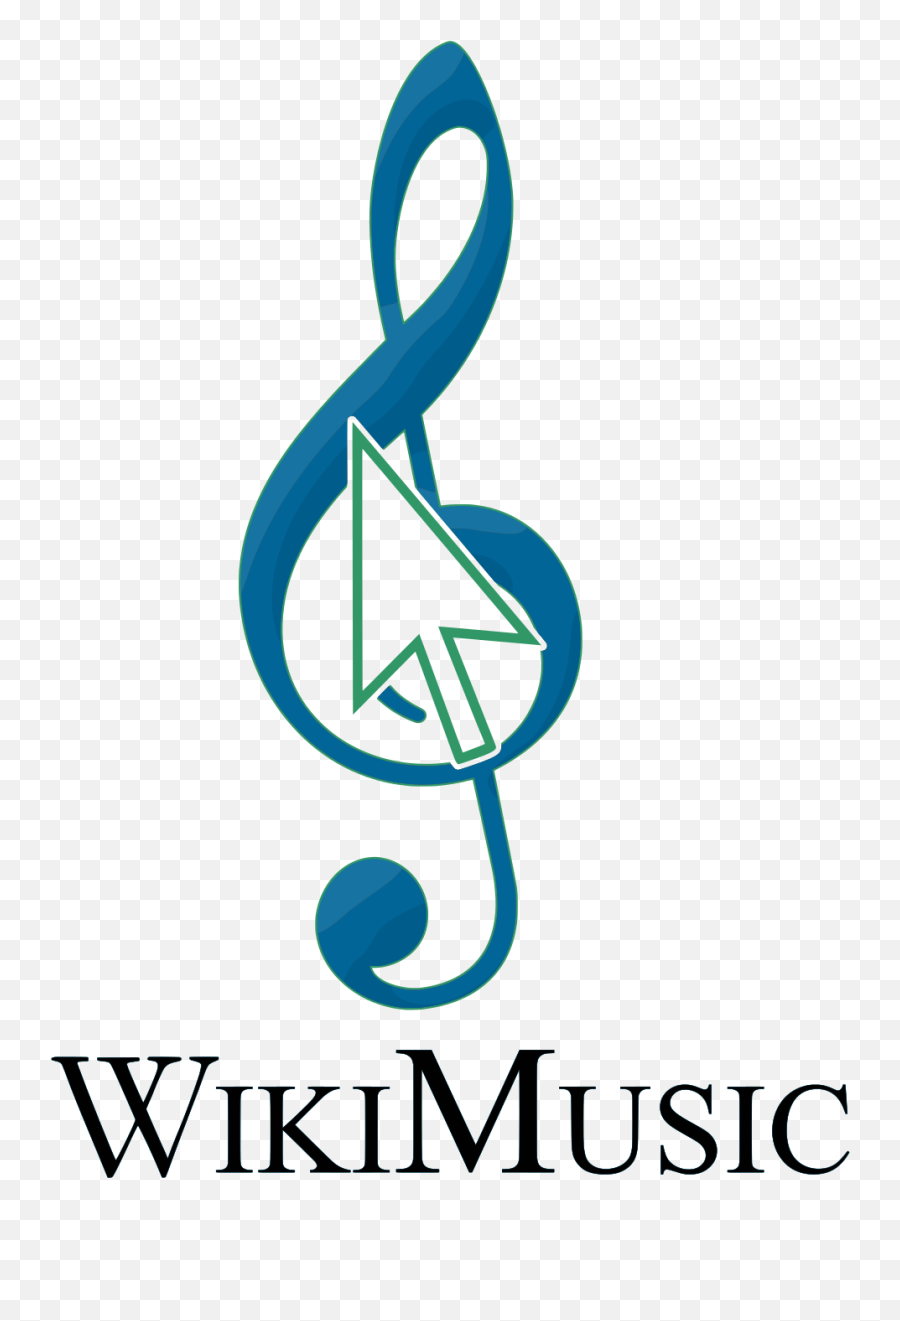 Filewikimusic Treble Clefsvg - Wikimedia Commons Treble Clef Png,Treble Clef Png